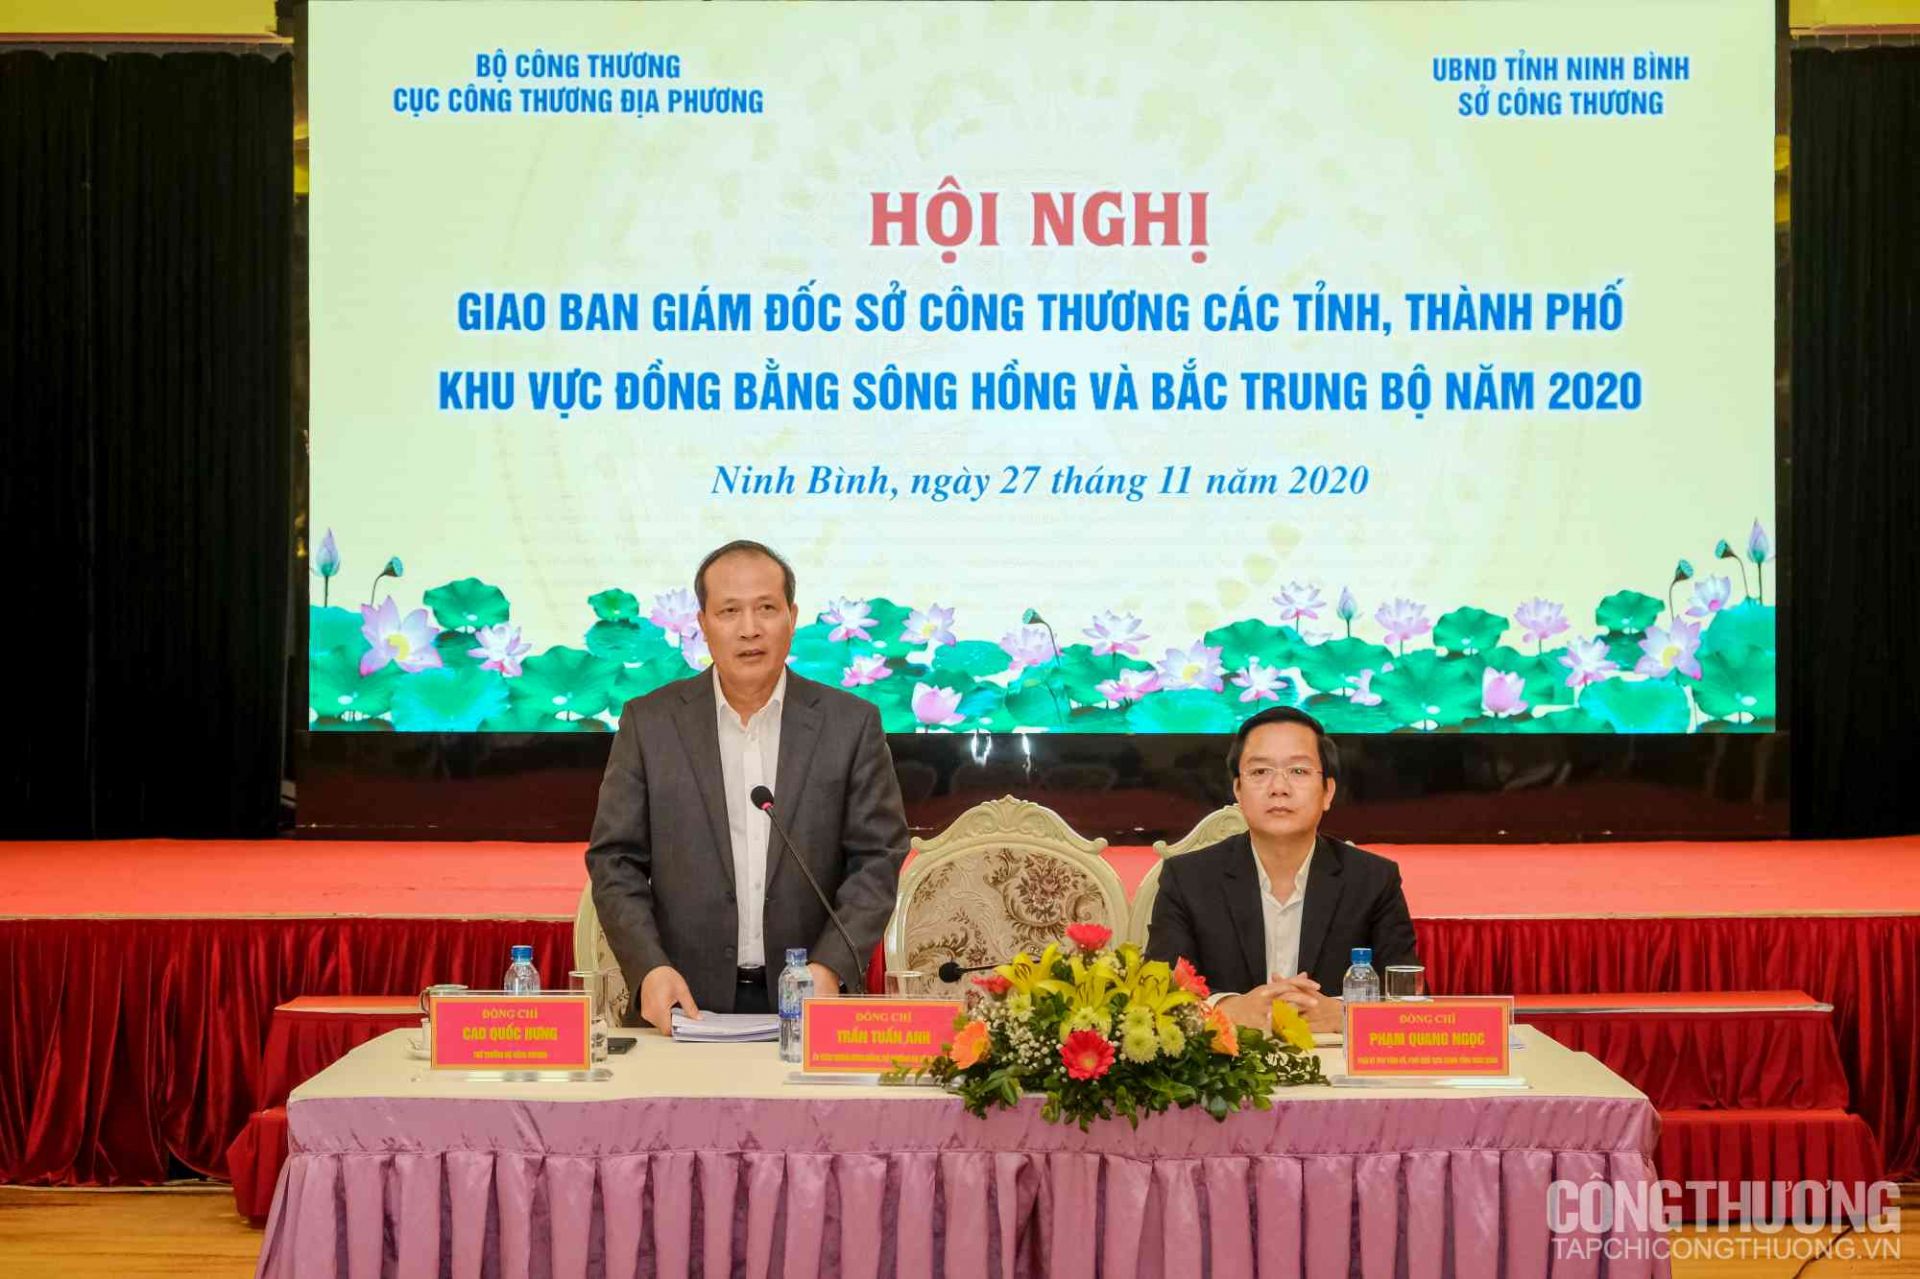 Thứ trưởng Cao Quốc Hưng (bên trái) và Phó Bí thư Tỉnh ủy Ninh Bình Phạm Quang Ngọc (bên phải)